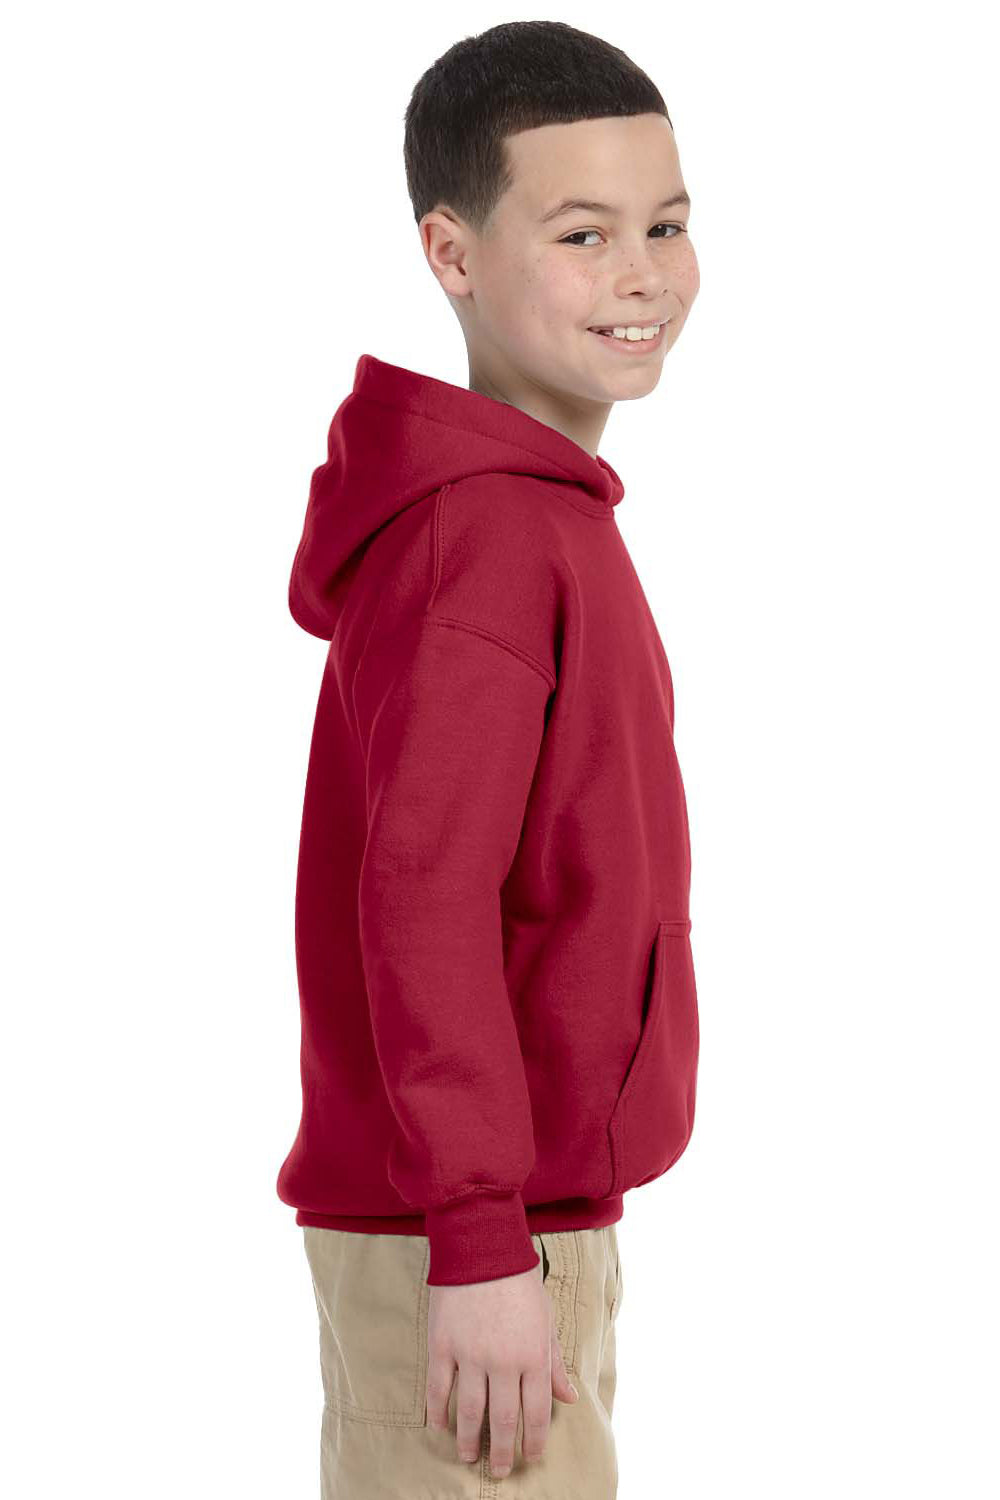 Gildan G185B Youth Hooded Sweatshirt Hoodie Cardinal Red Side